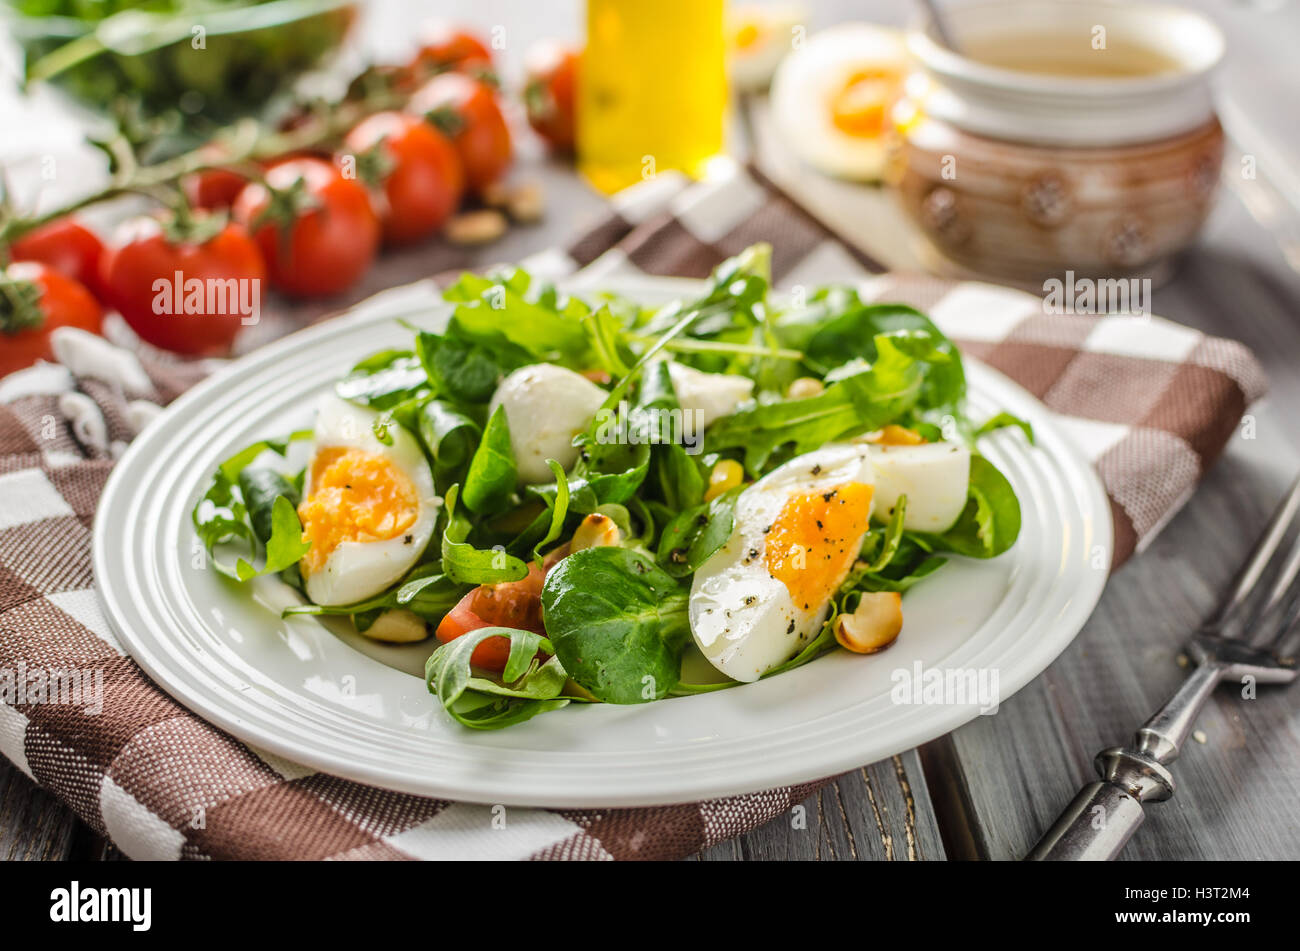 Салаты с яйцом какие можно. Салат с яйцом. Овощной салат с яйцом. Салат с яйцами вареными. Салат из овощей с яйцом.